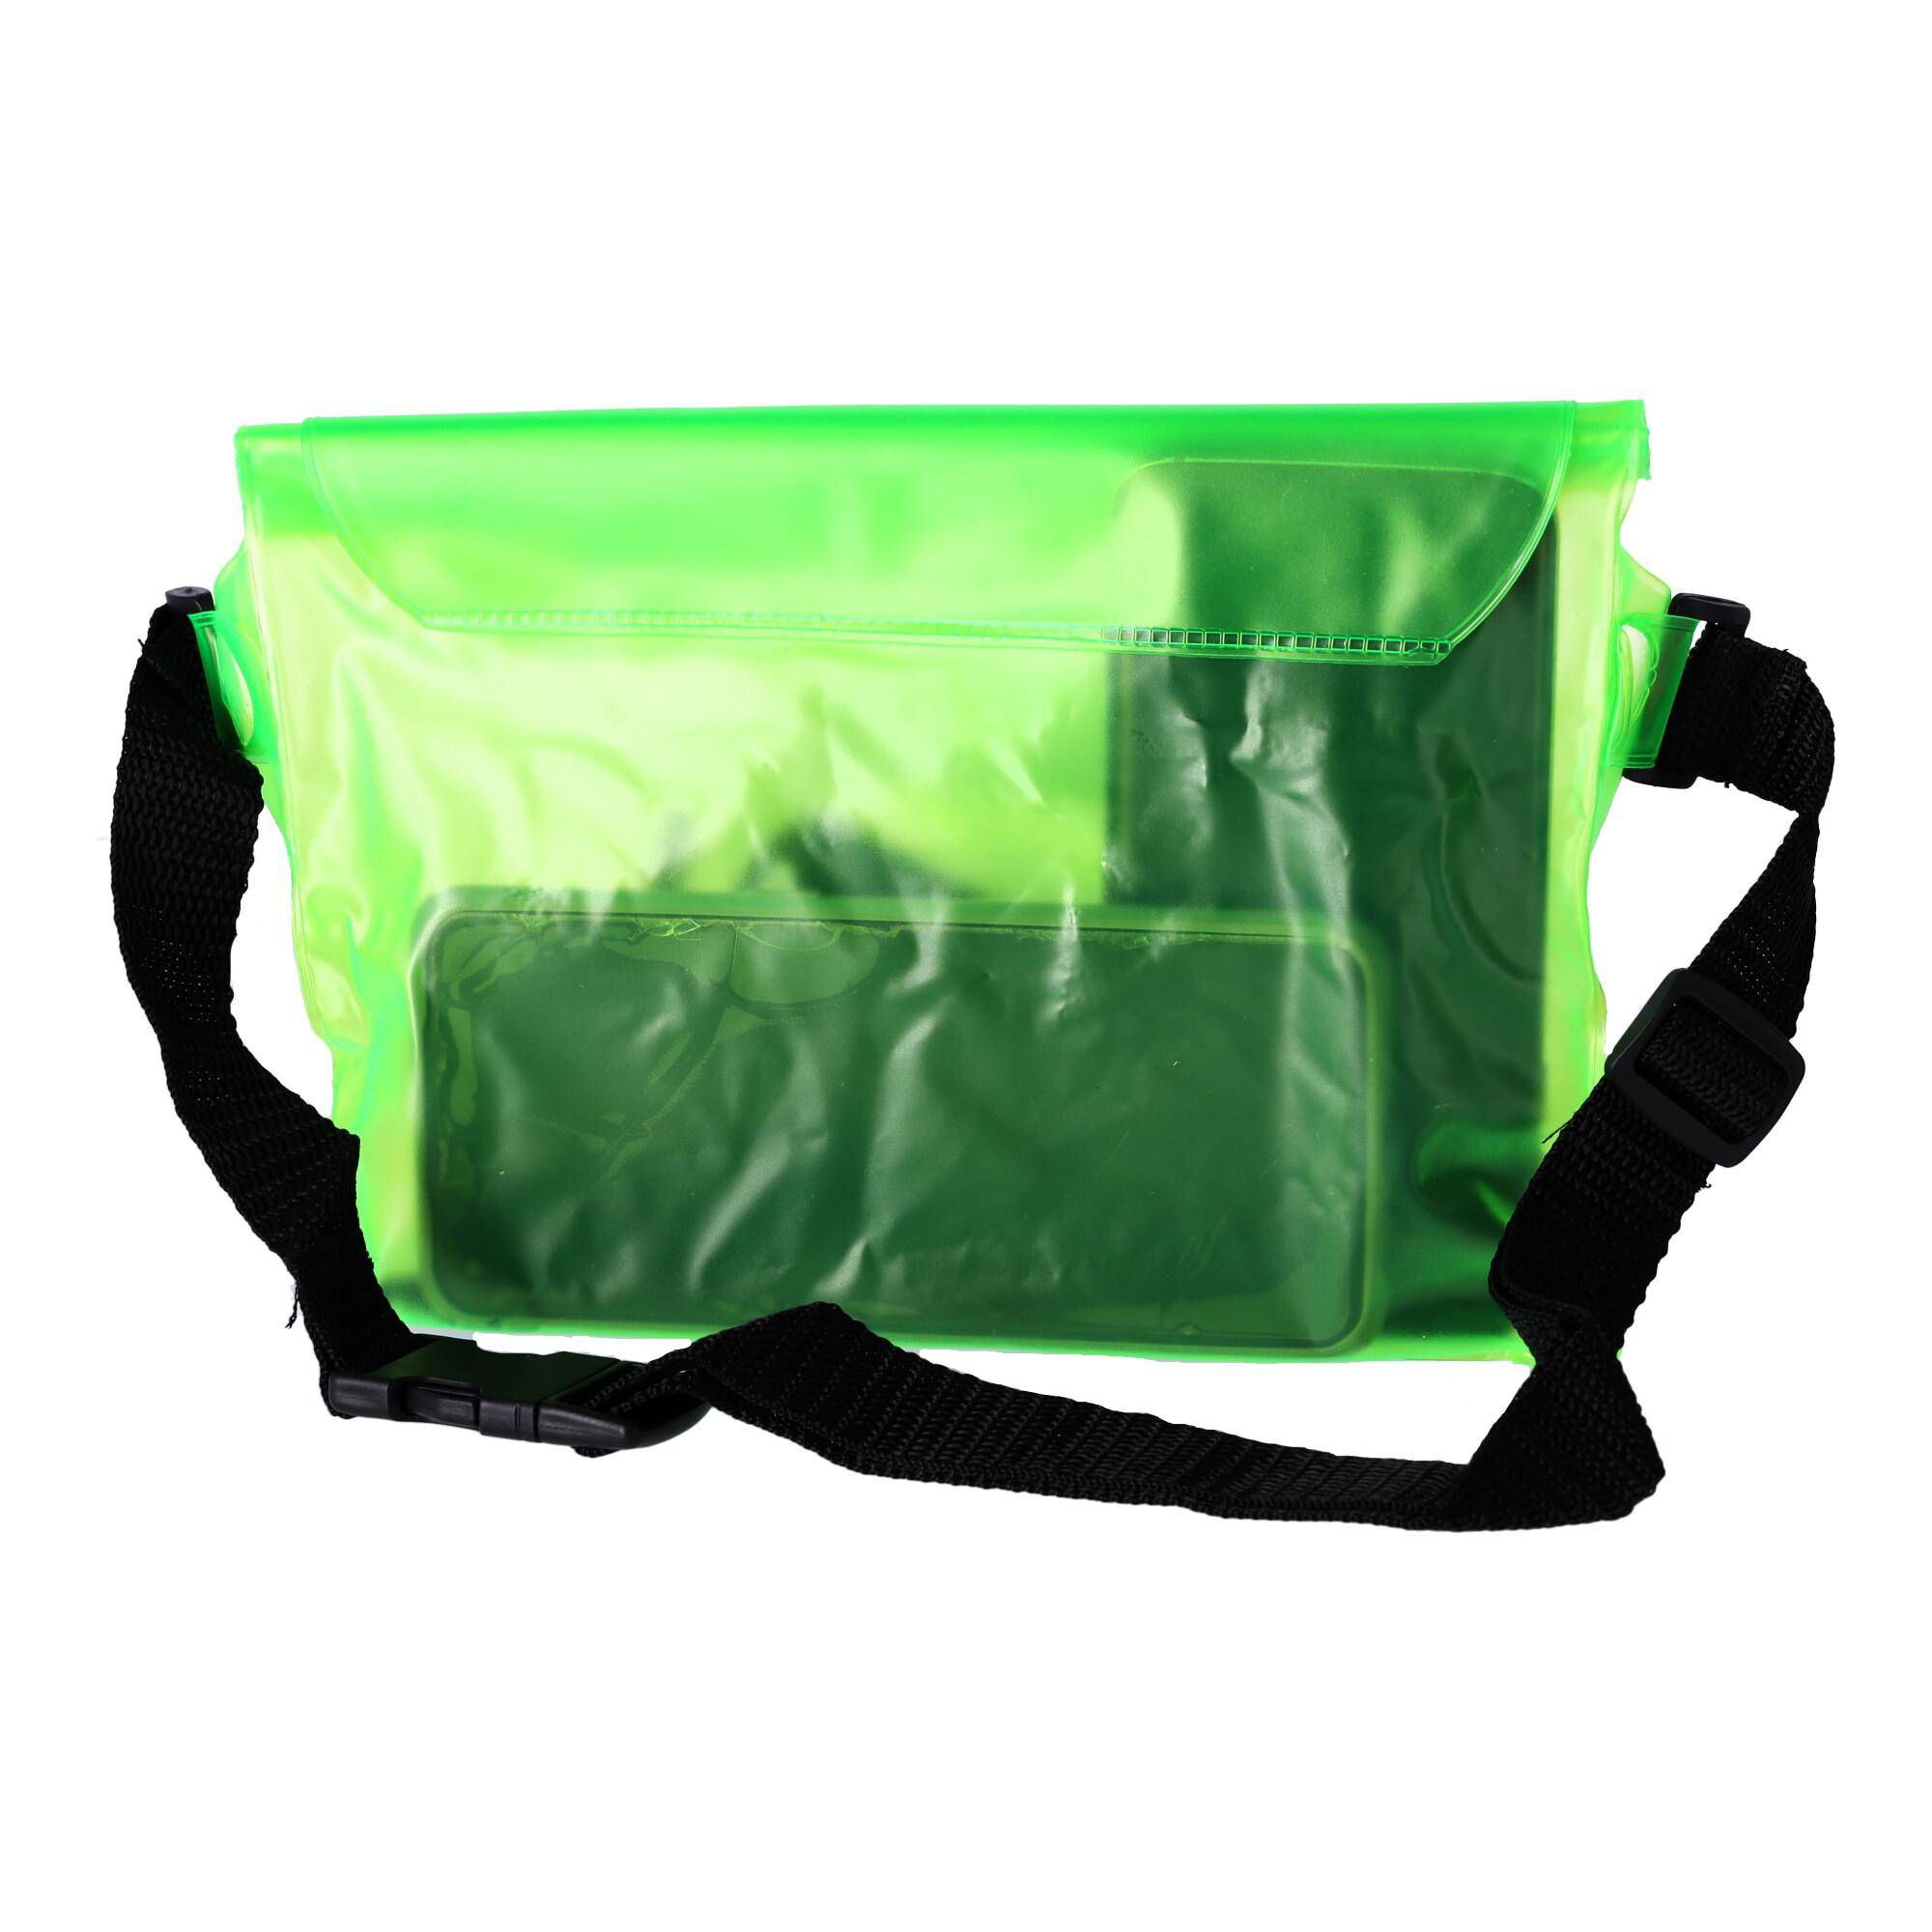 Waterproof kidney, belt pouch - green